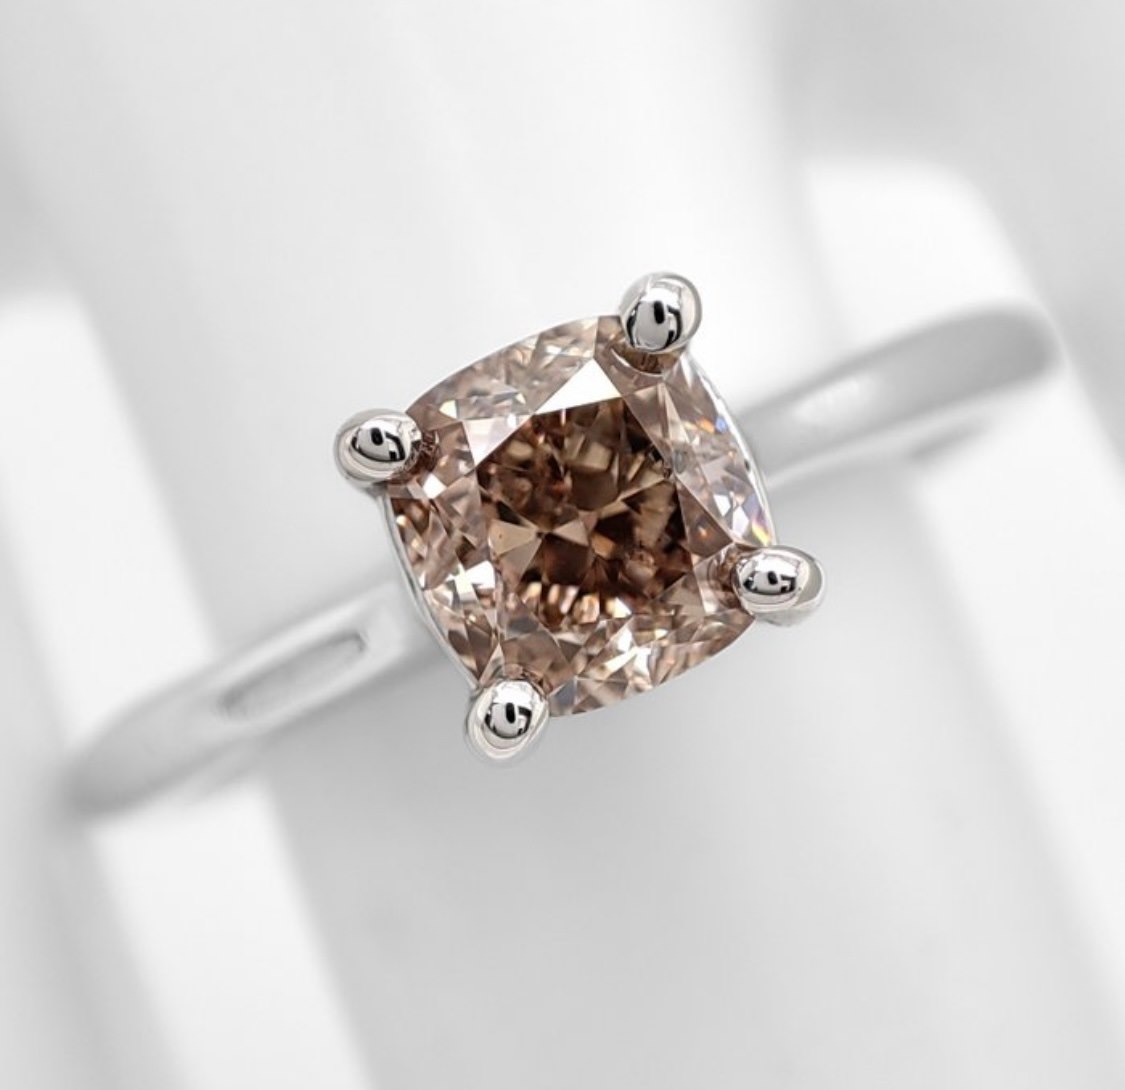 .. - Diamantový prsten 1,02 ct, zlato 585/1000, značeno platnou puncovní značkou "labuť", hrubá hmotnost 3,15 g